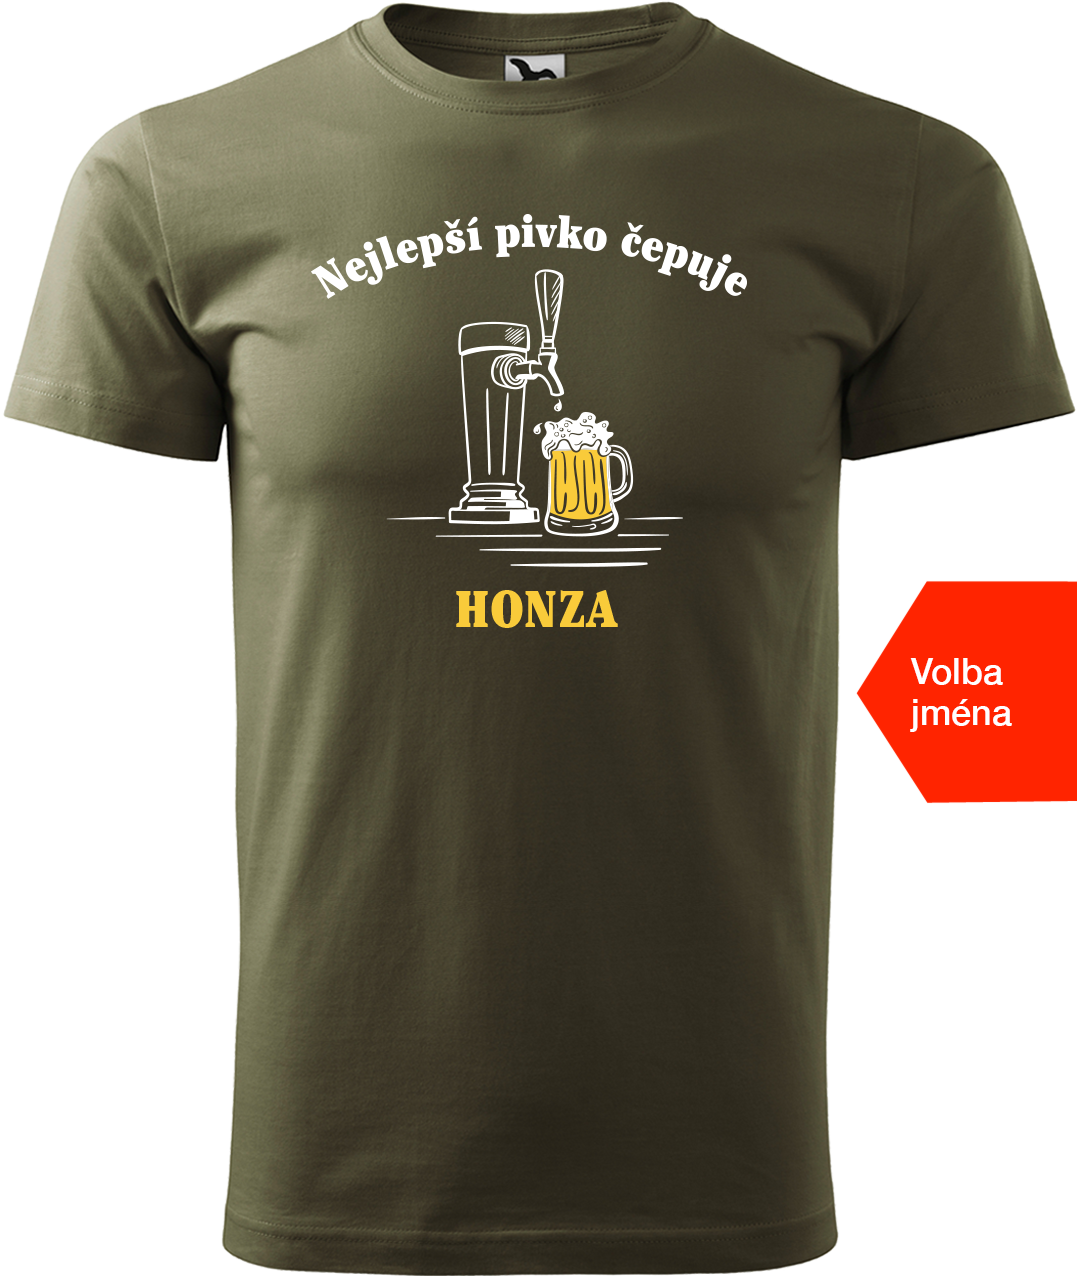 Pivní tričko - Nejlepší pivko čepuje + jméno Velikost: S, Barva: Military (69)